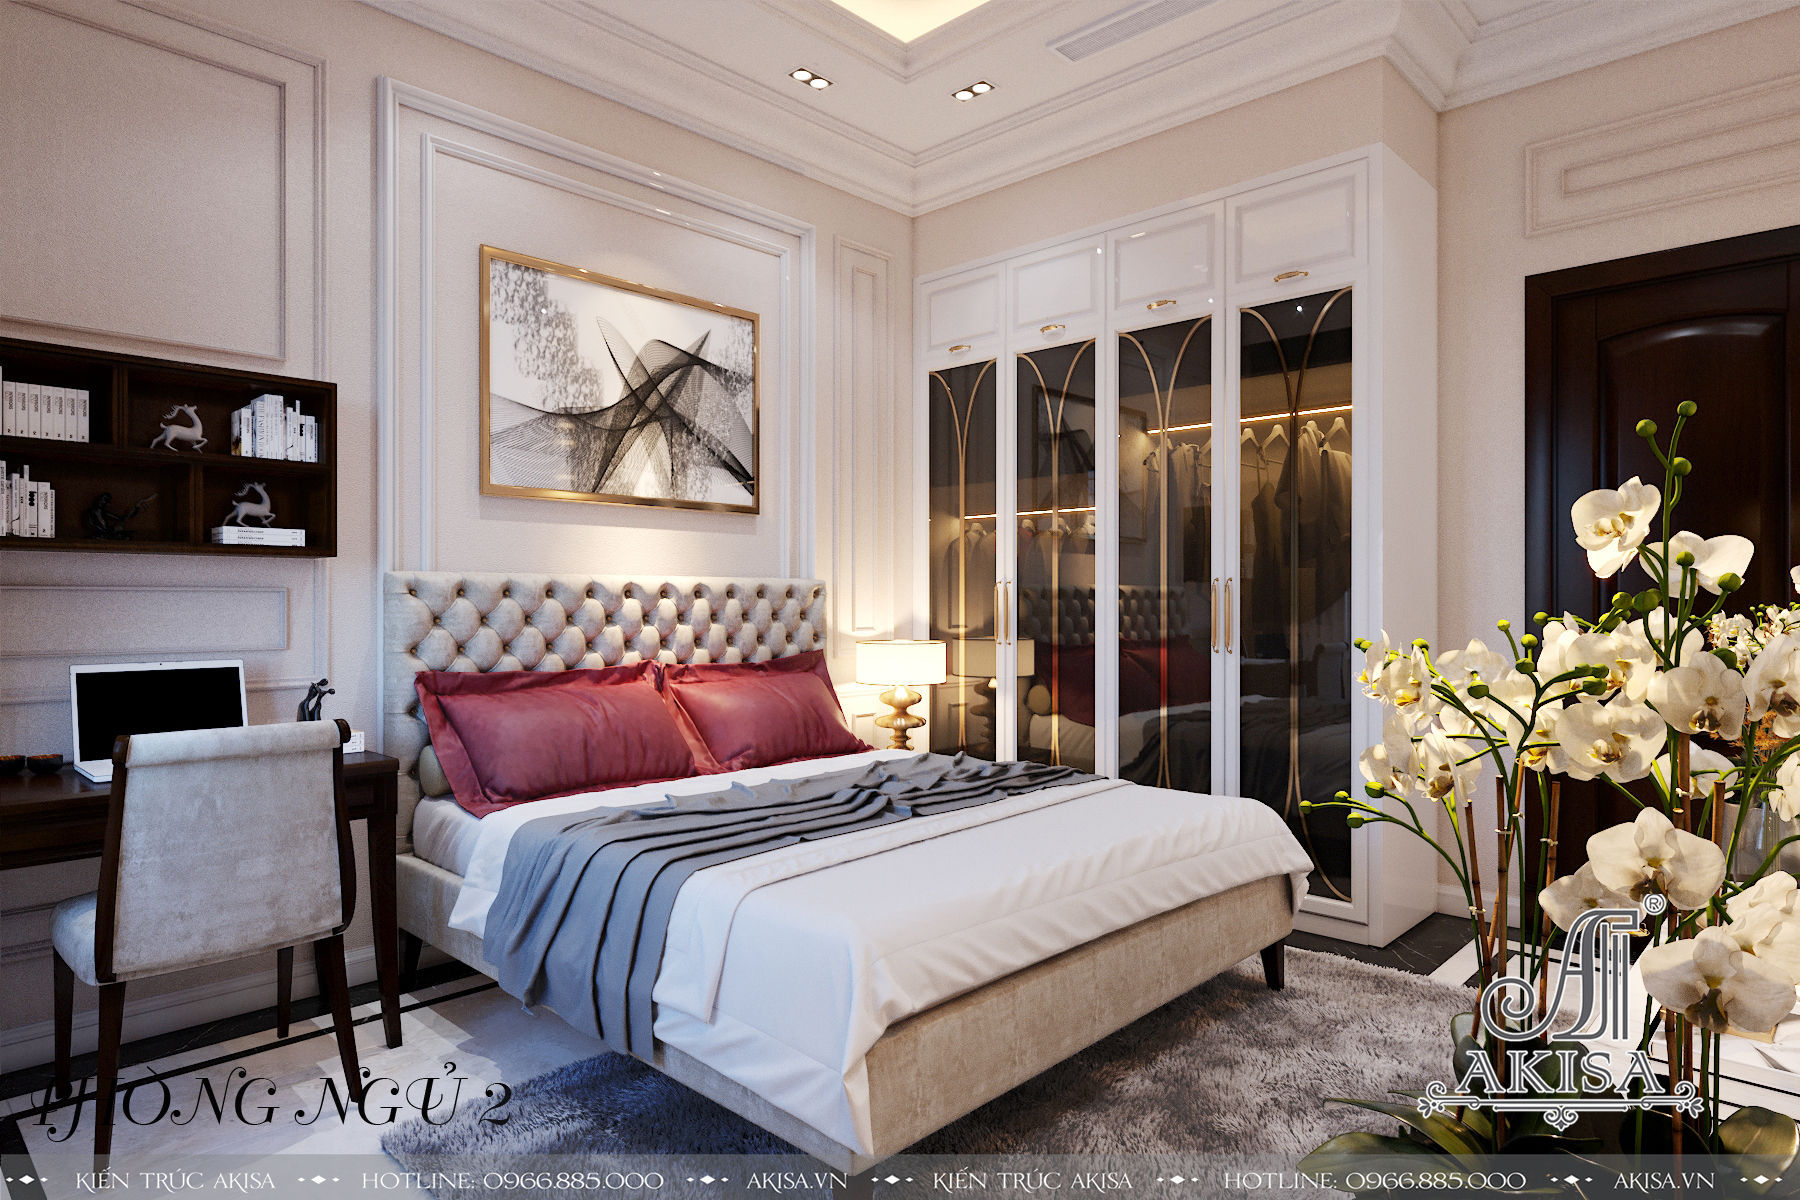 Phòng ngủ được thiết kế hiện đại, thời thượng, với phong cách trang trí và nội thất dựa theo sở thích và nhu cầu sử dụng của từng thành viên trong gia đình.